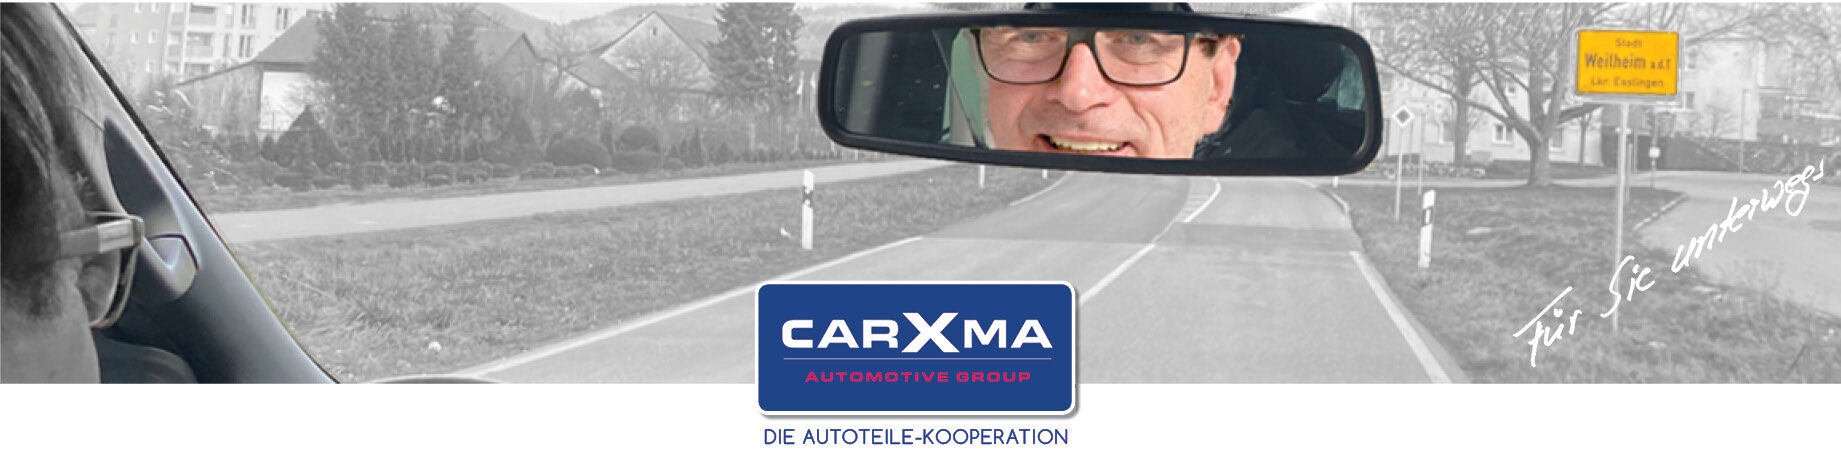 carXma – Die Autoteile-Kooperation